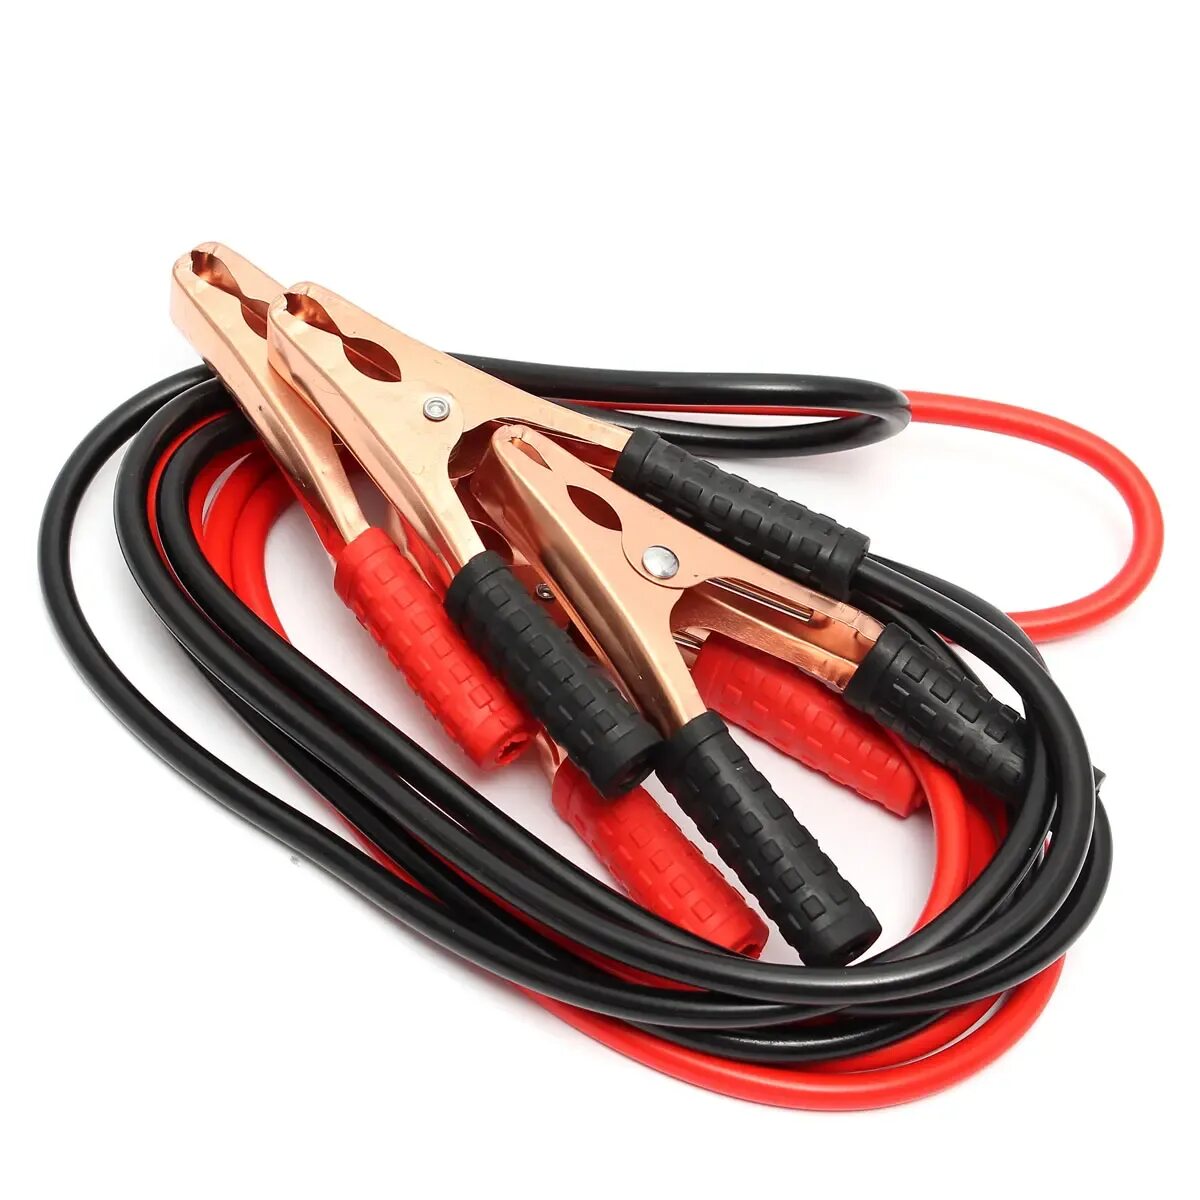 Провода прикуривания Booster Cable 200amp 2 метра (12). Пусковые провода Booster Cable 500. Провода для прикуривания авто "Booster Cable" (1000 amp). Провода прикуривания KS-200a, 2,5 метра, -50°с, 200амр. Купить кабель для машины